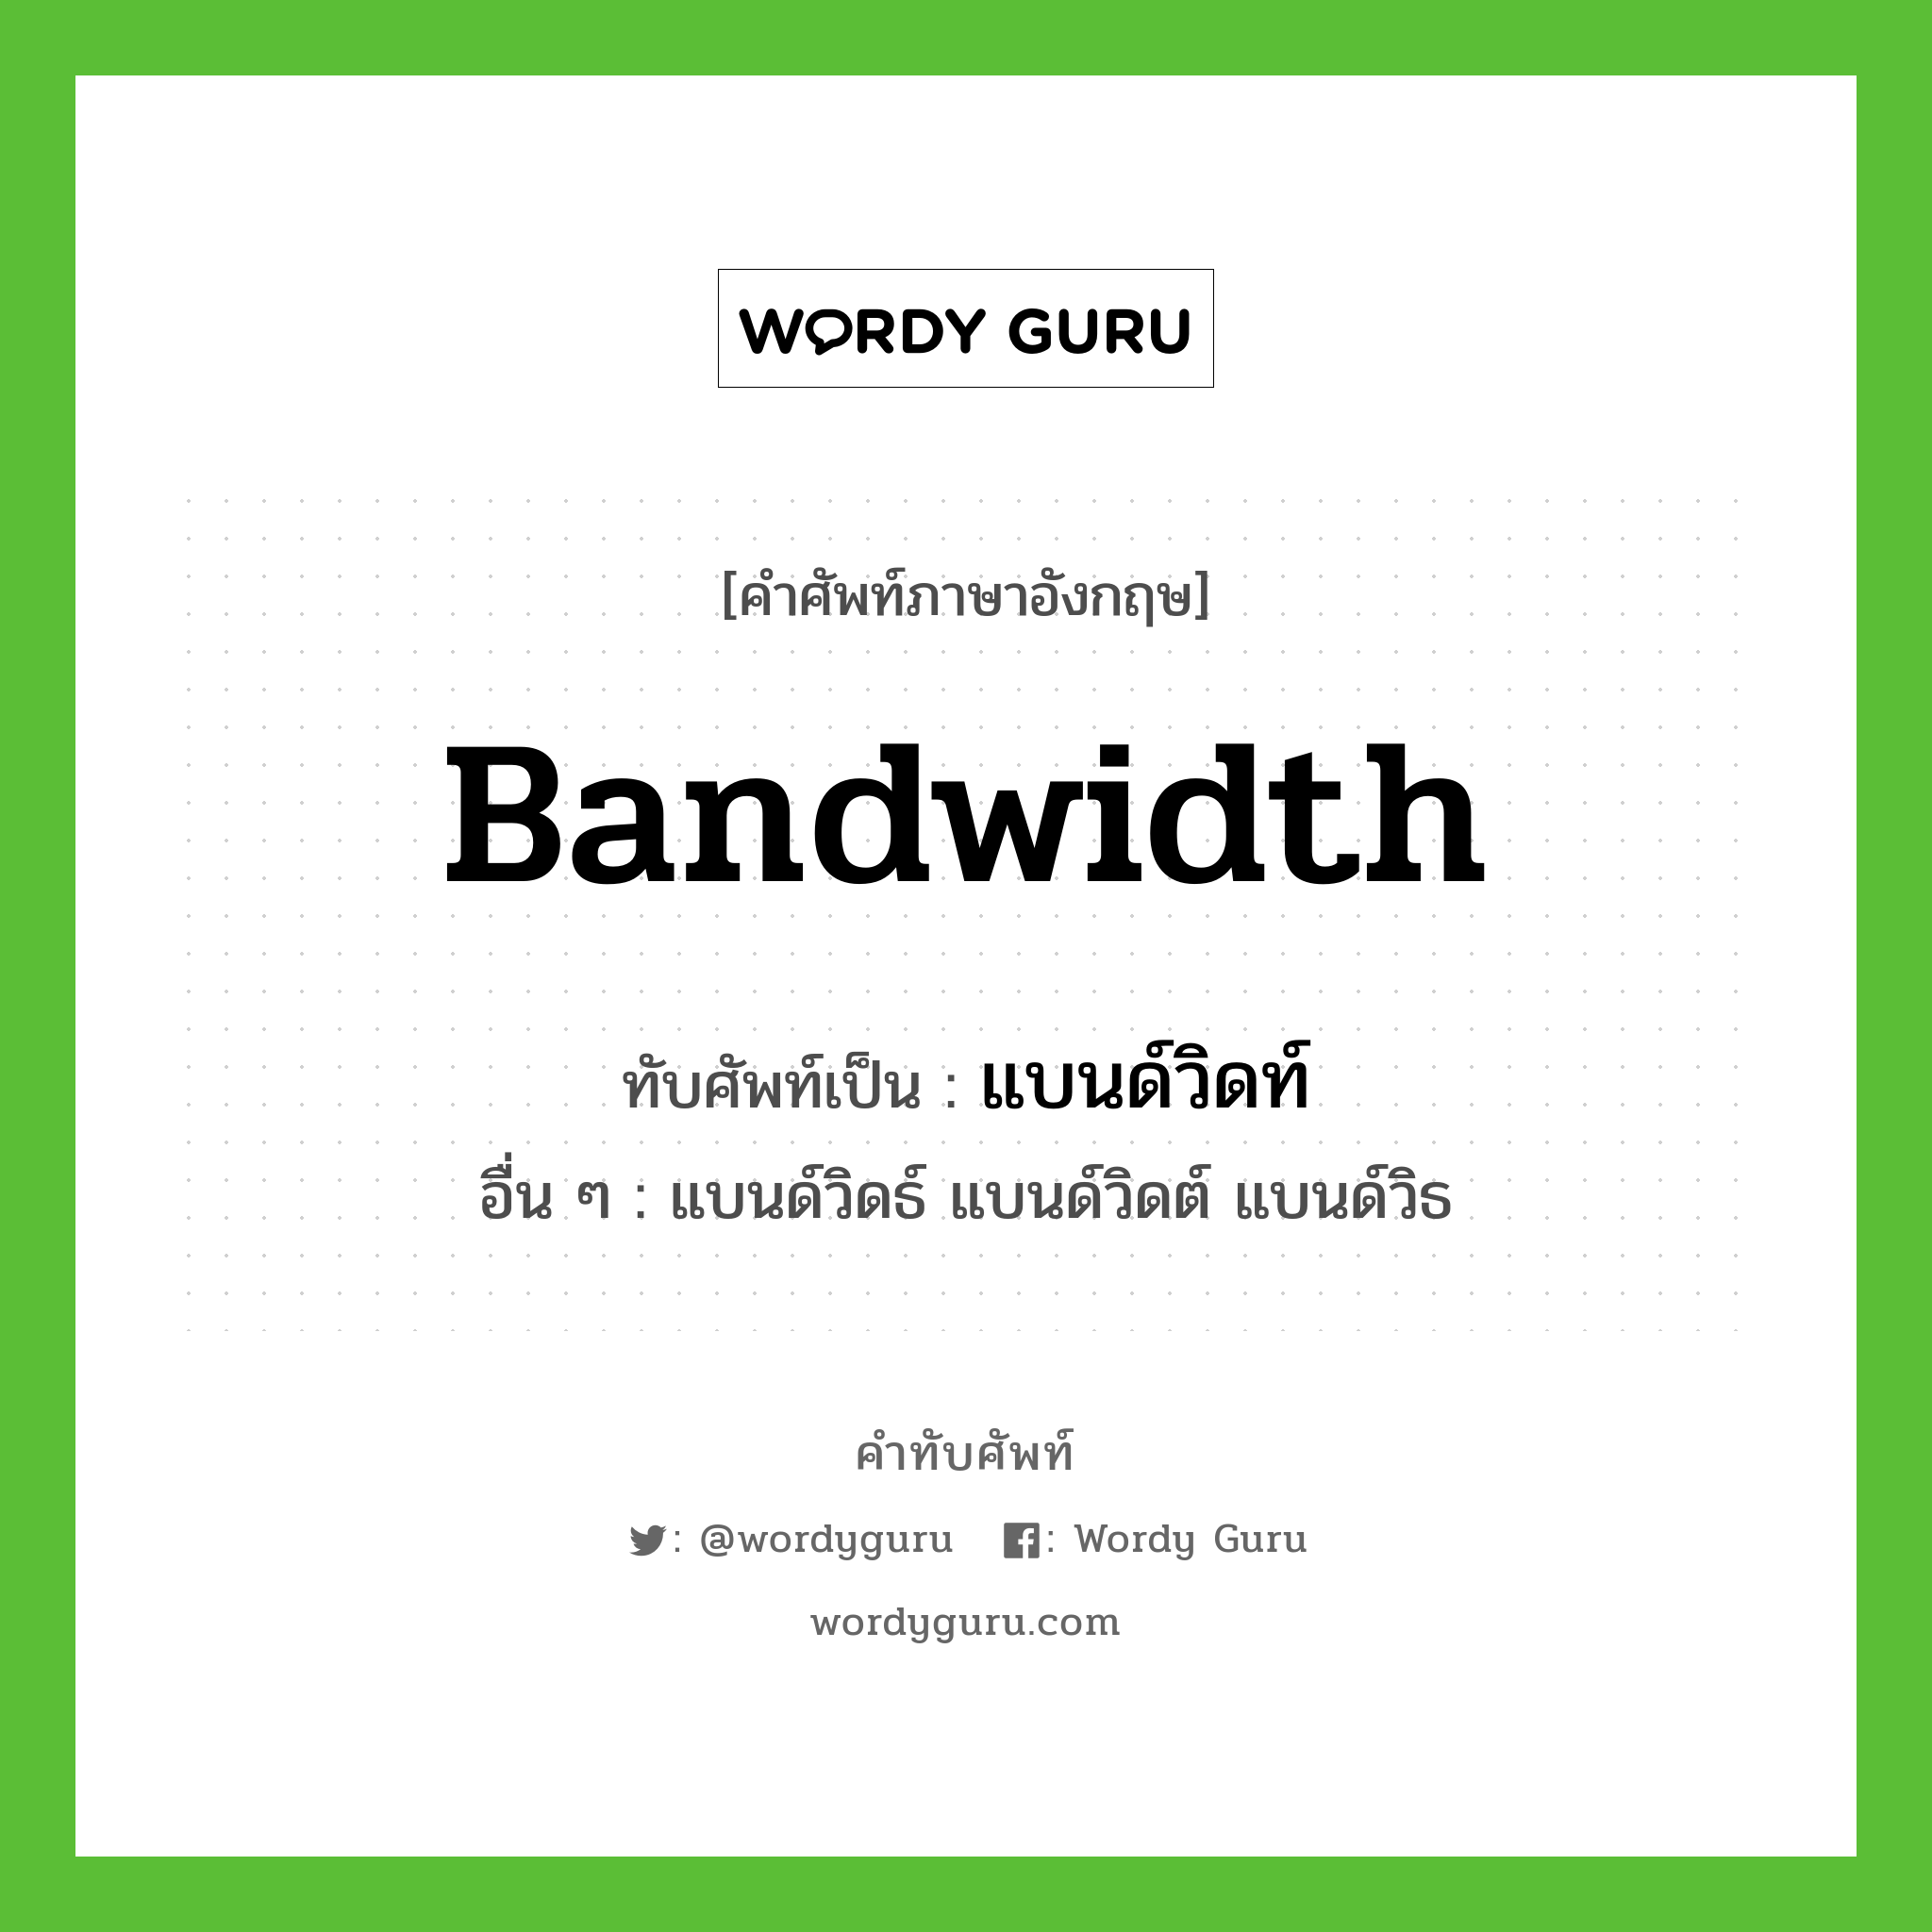 bandwidth เขียนเป็นคำไทยว่าอะไร?, คำศัพท์ภาษาอังกฤษ bandwidth ทับศัพท์เป็น แบนด์วิดท์ อื่น ๆ แบนด์วิดธ์ แบนด์วิดต์ แบนด์วิธ